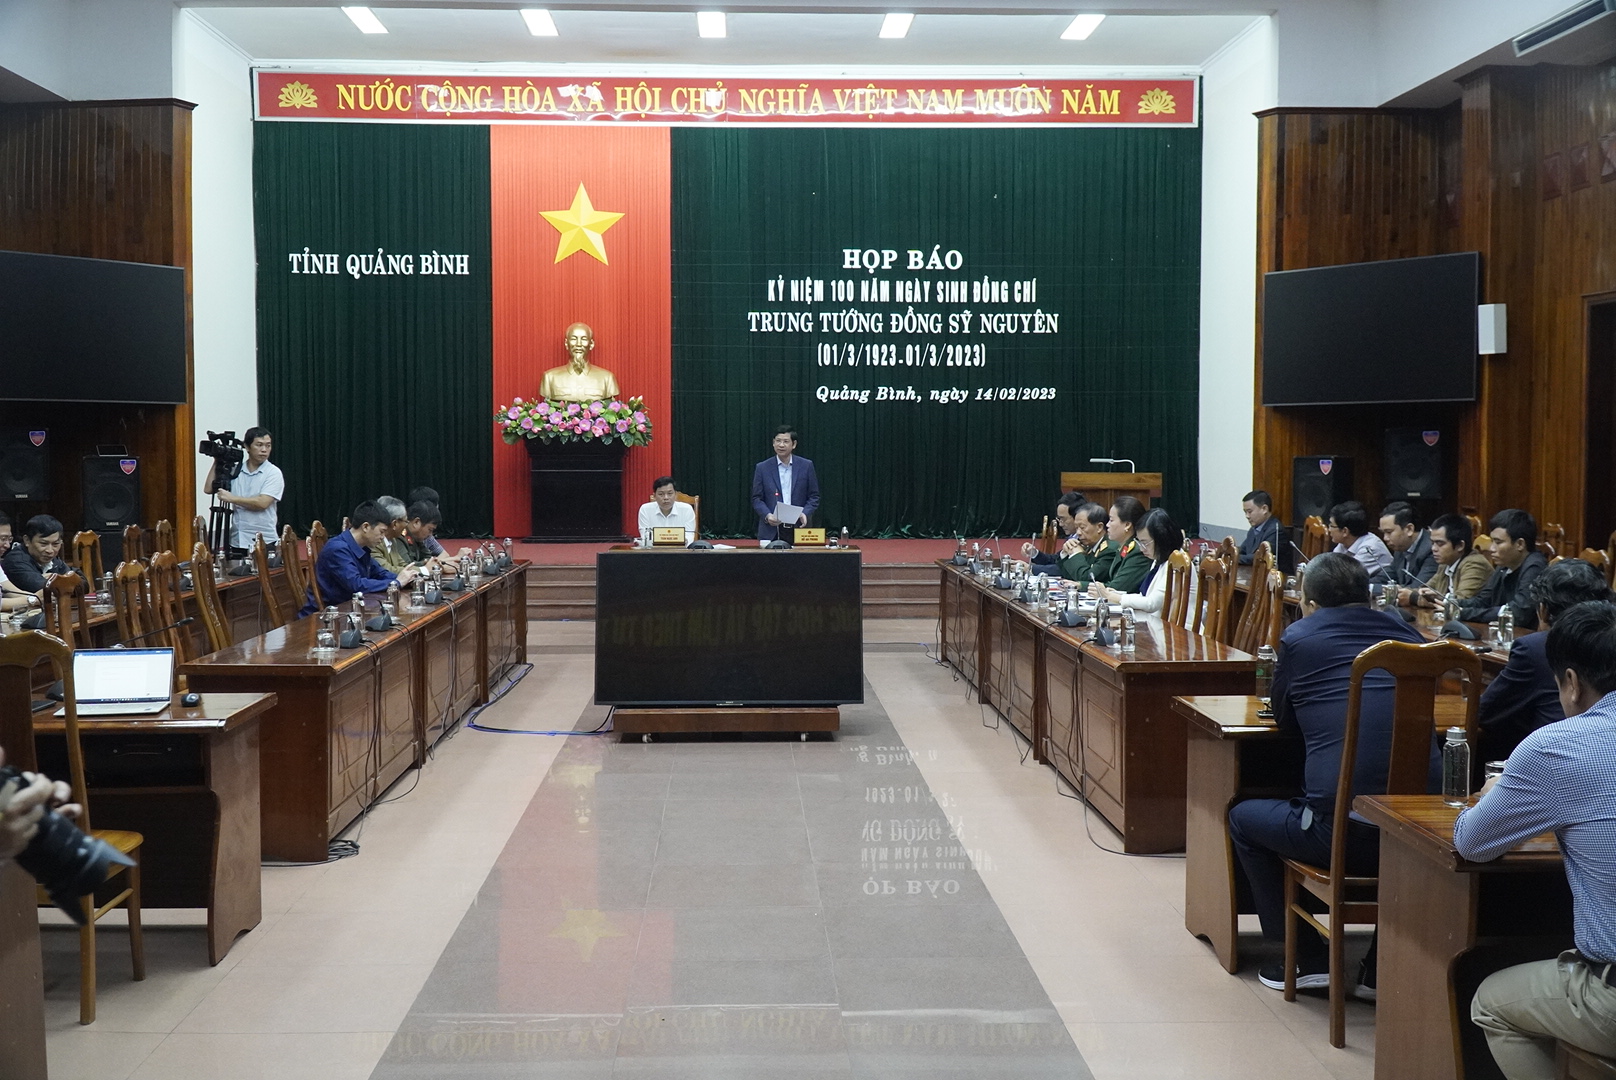 Quảng Bình tổ chức nhiều hoạt động nhân 100 năm ngày sinh trung tướng Đồng Sỹ Nguyên - Ảnh 1.